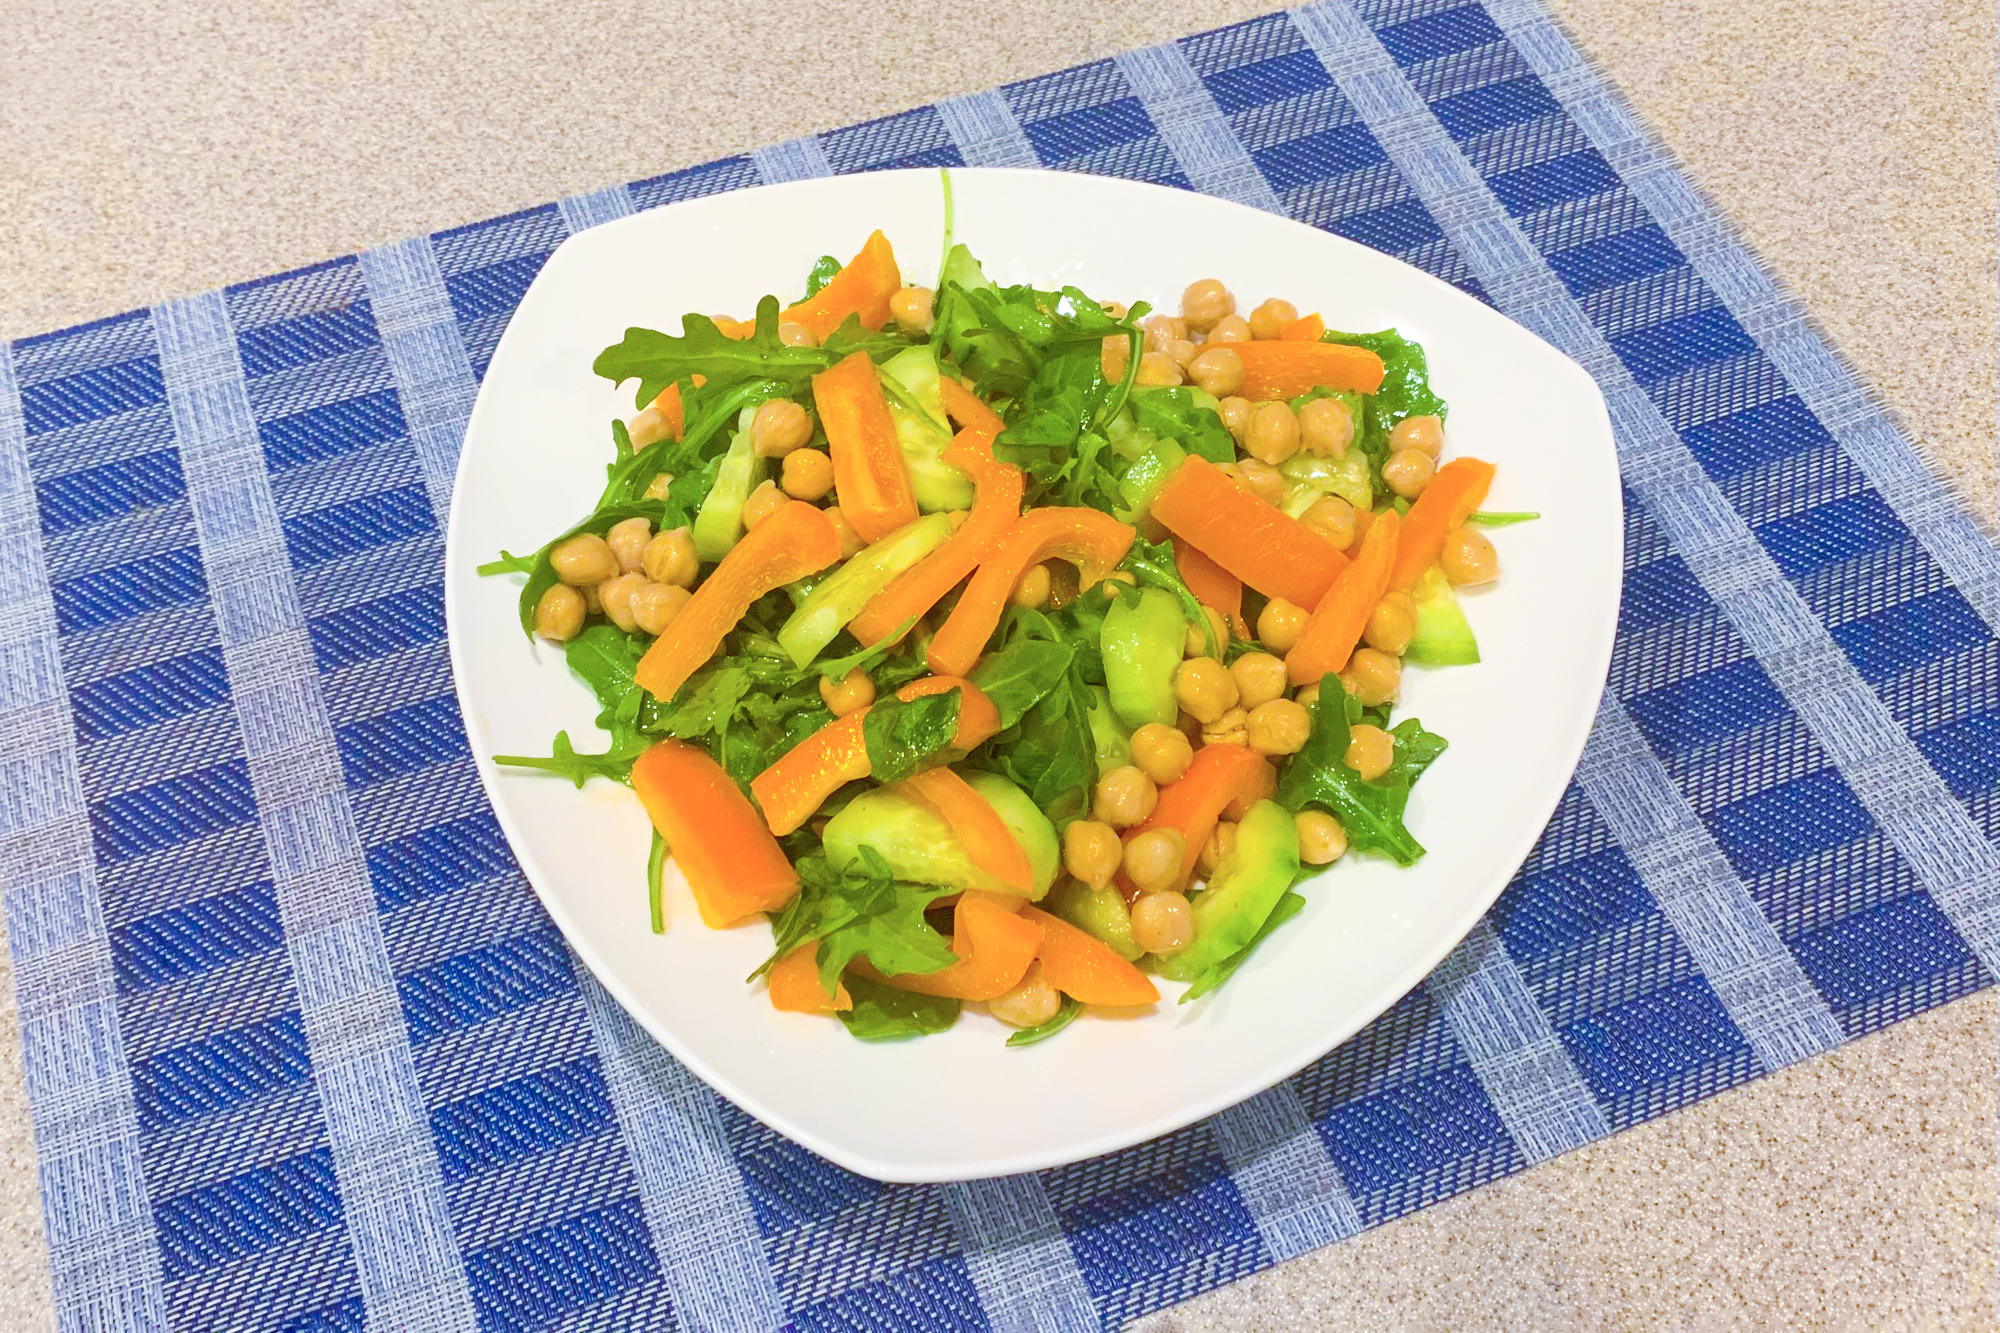 Món salad Địa Trung Hải ngon miệng với dưa chuột, ớt bell, rau aurugula (cải rocket), và đậu gà. (Ảnh: Cara Michelle Miller)